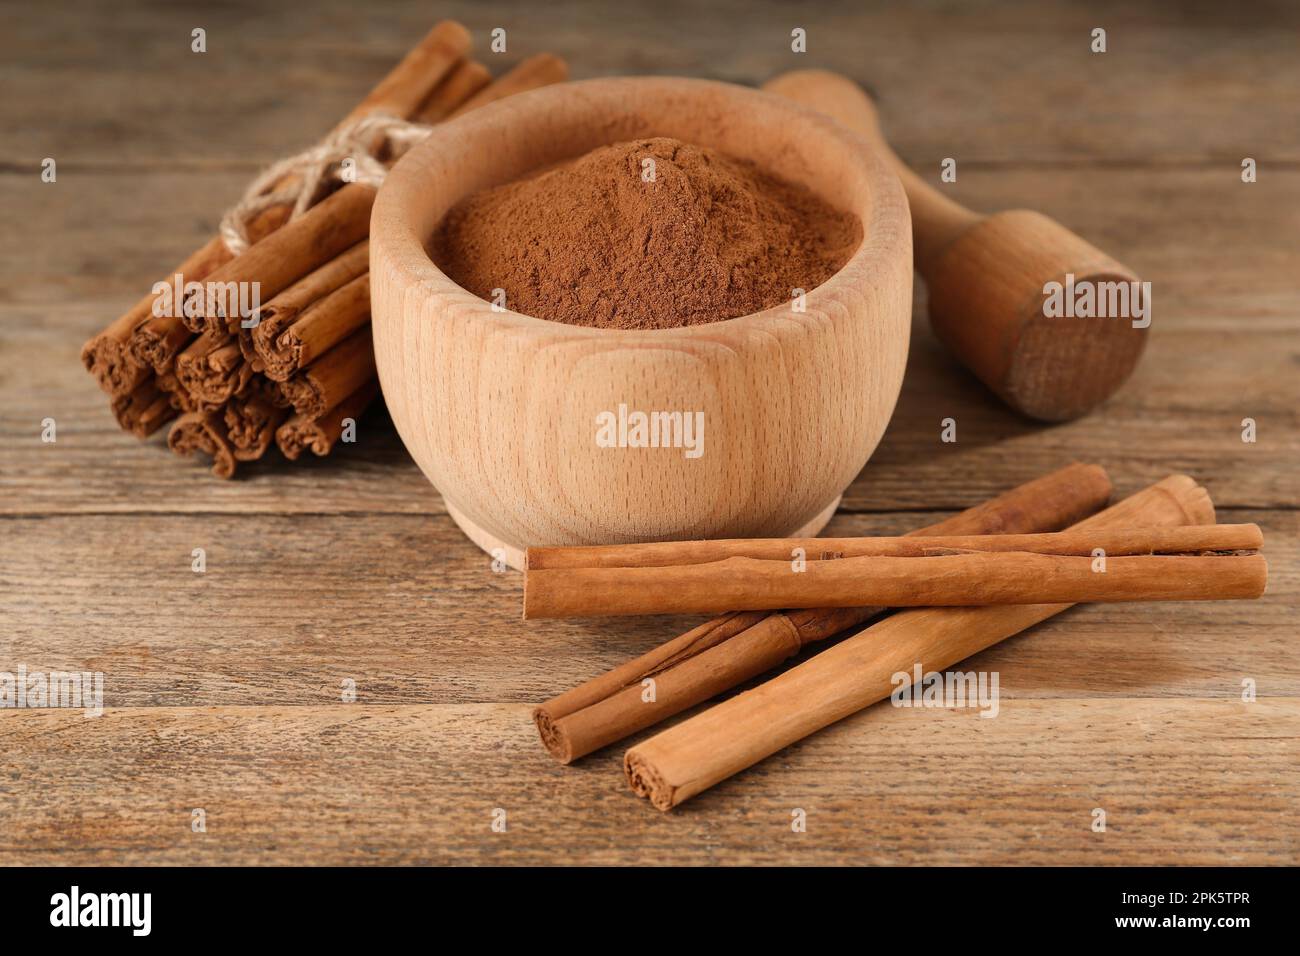 Cannella in polvere aromatica in mortaio, bastoncini e pestello su tavola di legno Foto Stock